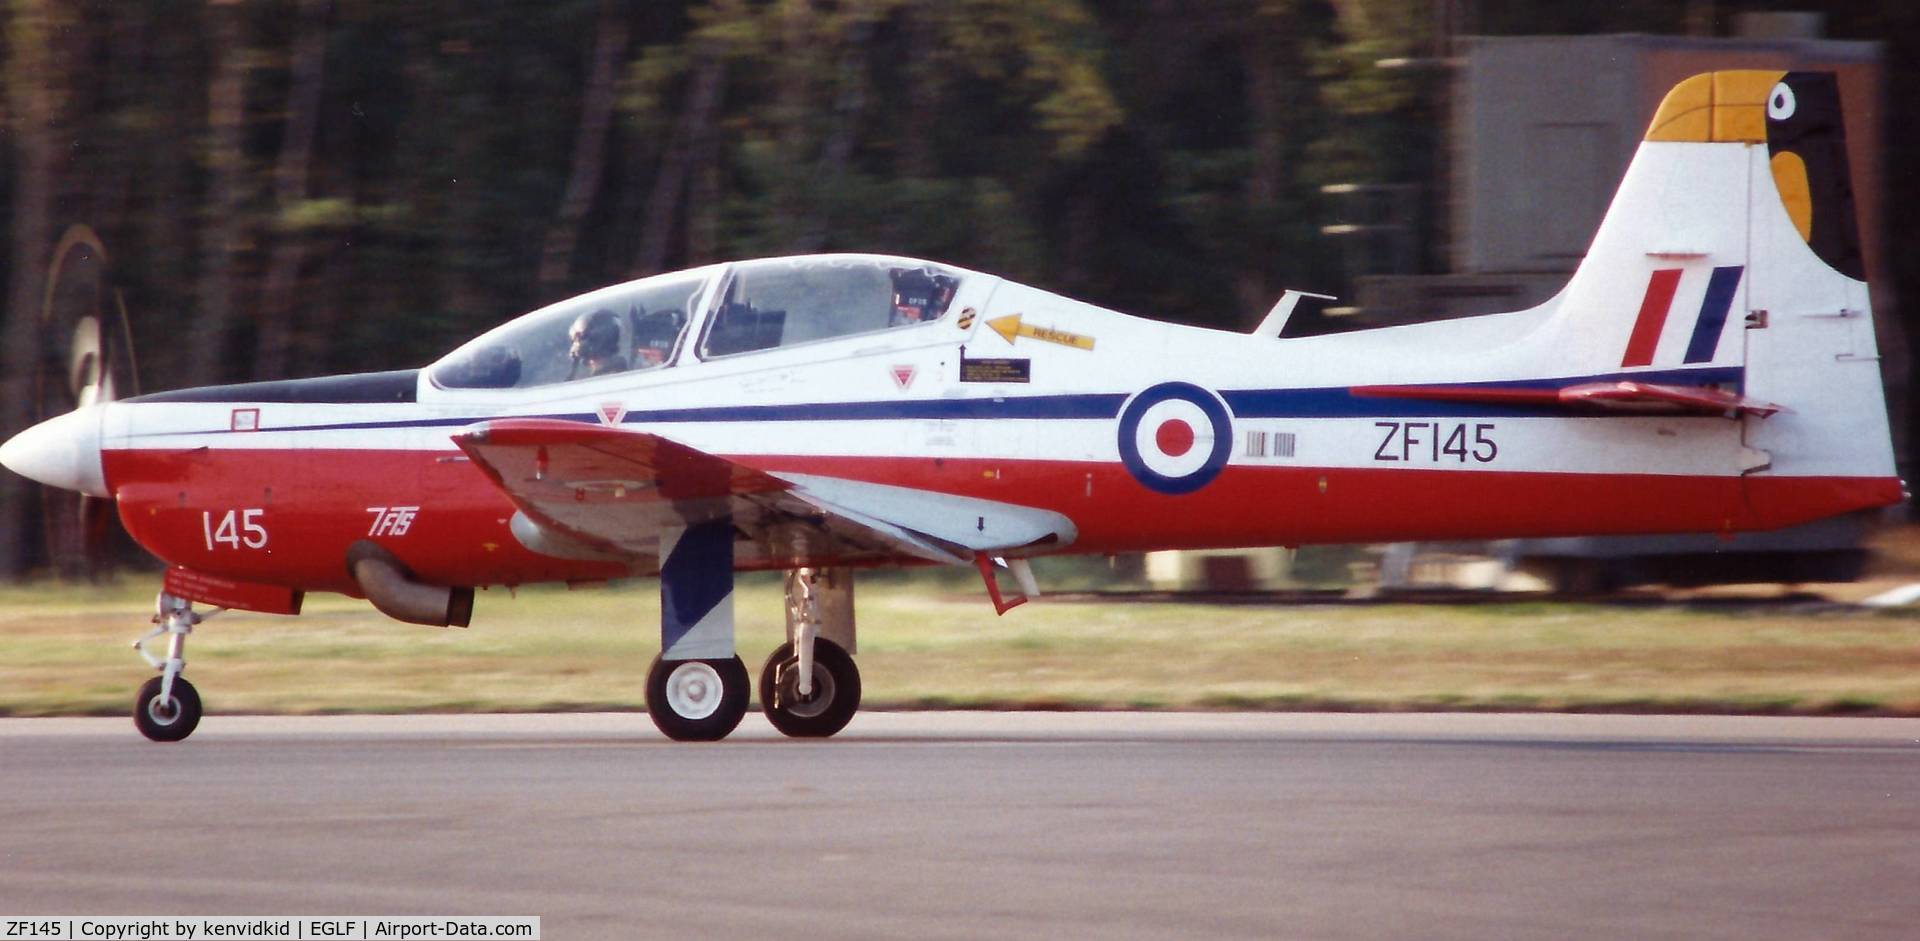 ZF145, 1988 Short S-312 Tucano T1 C/N S011/T11, At the 1990 Farnborough International Air Show.